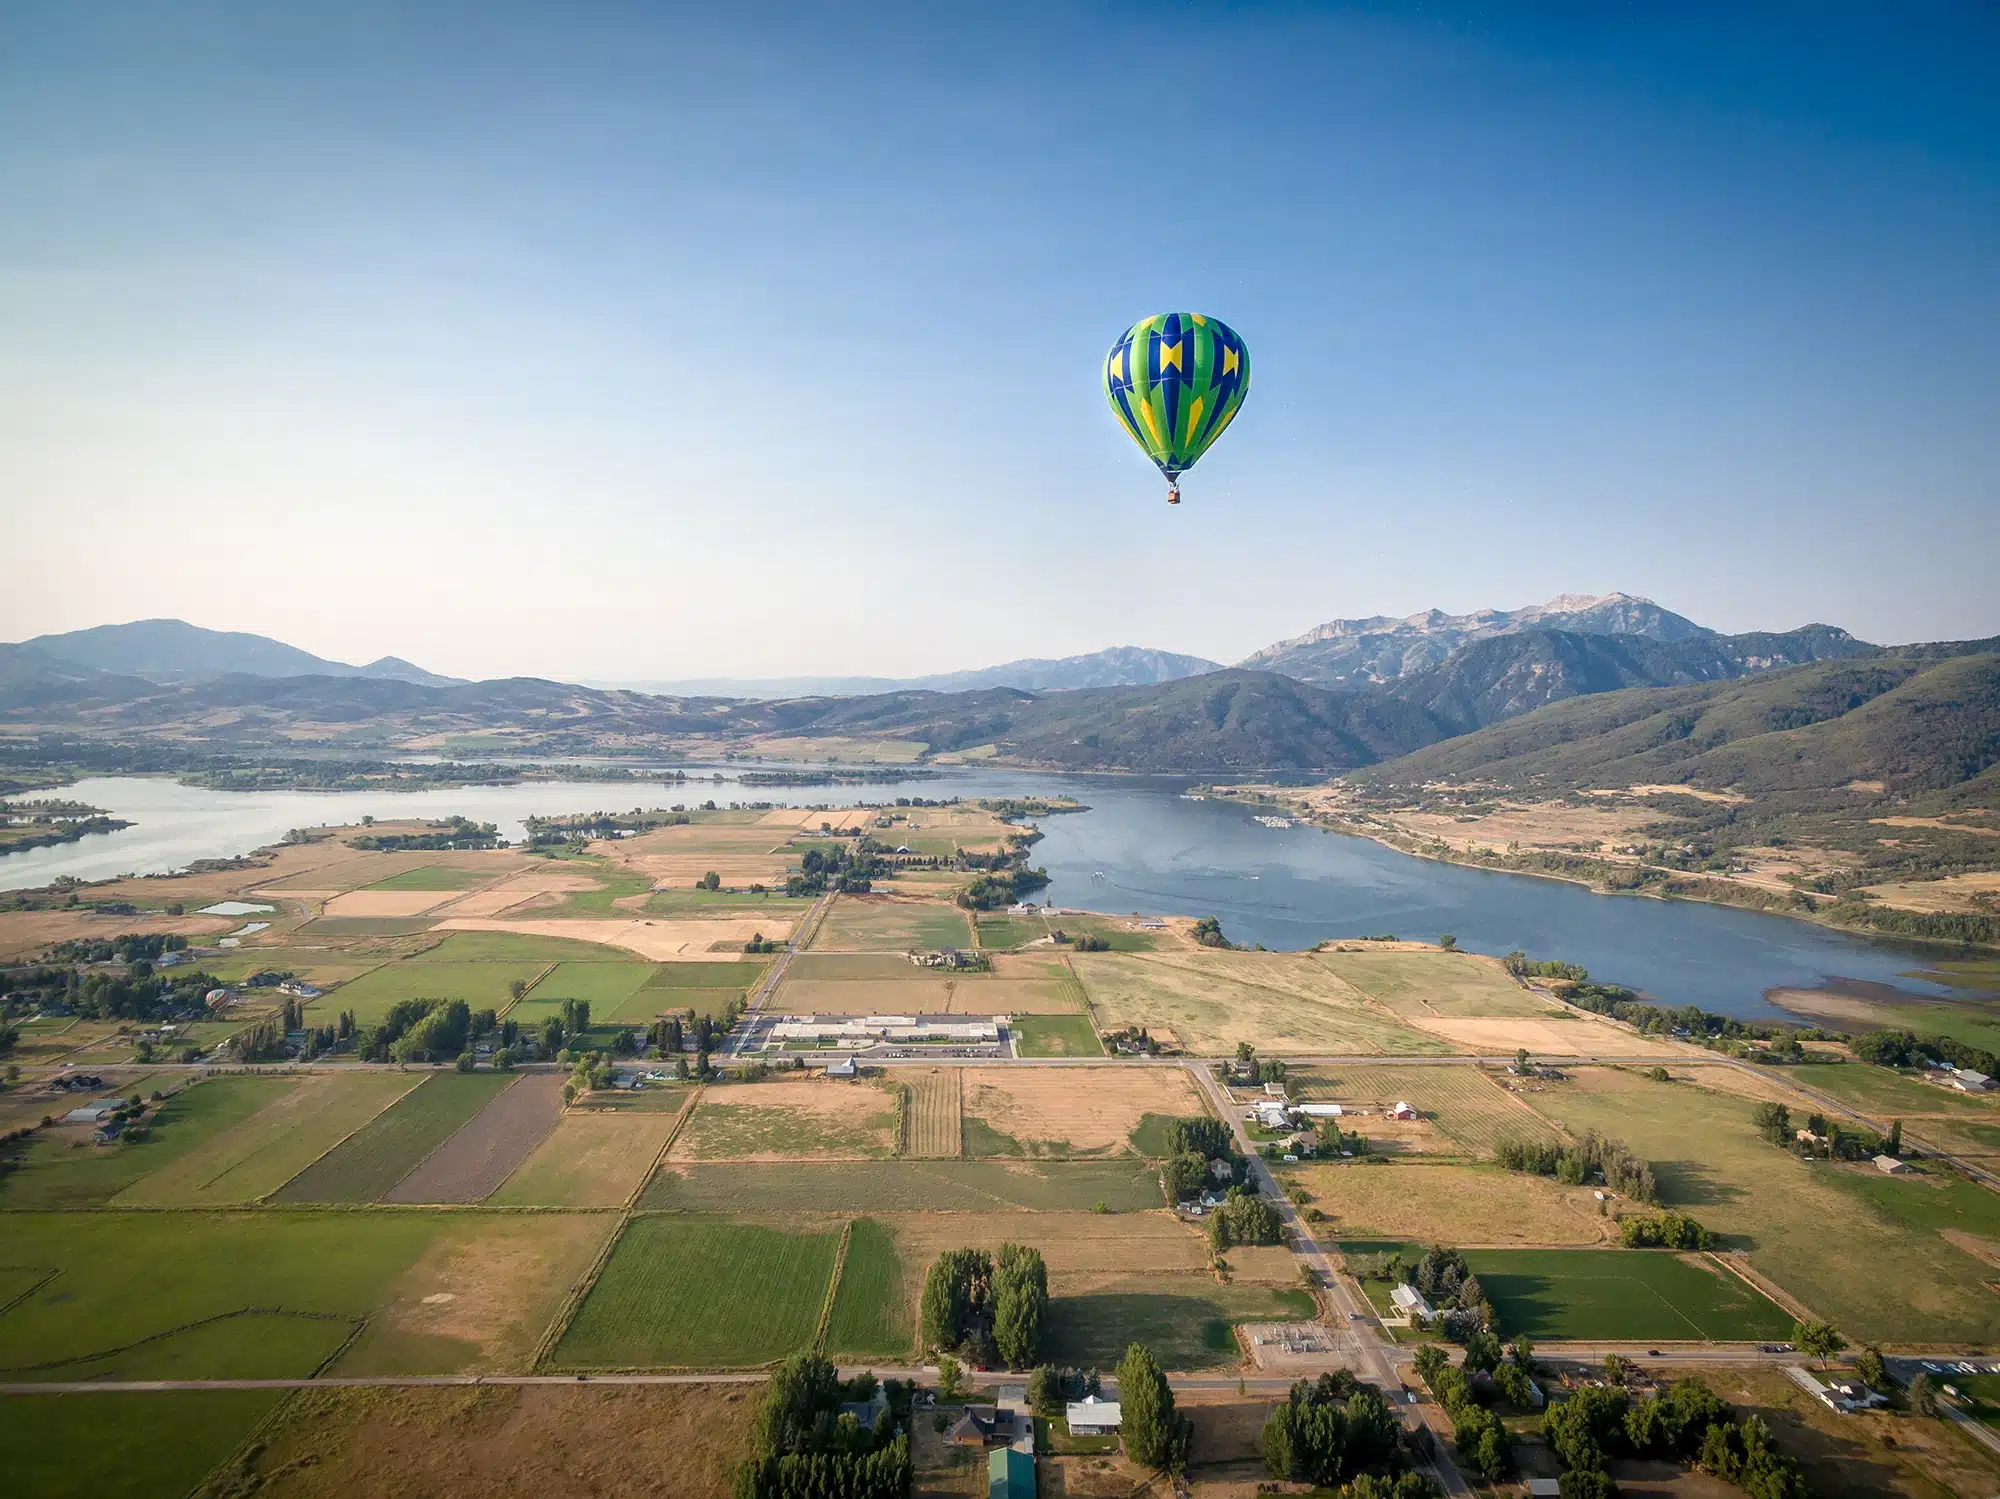 A hot air balloon floats over Ogden Valley.